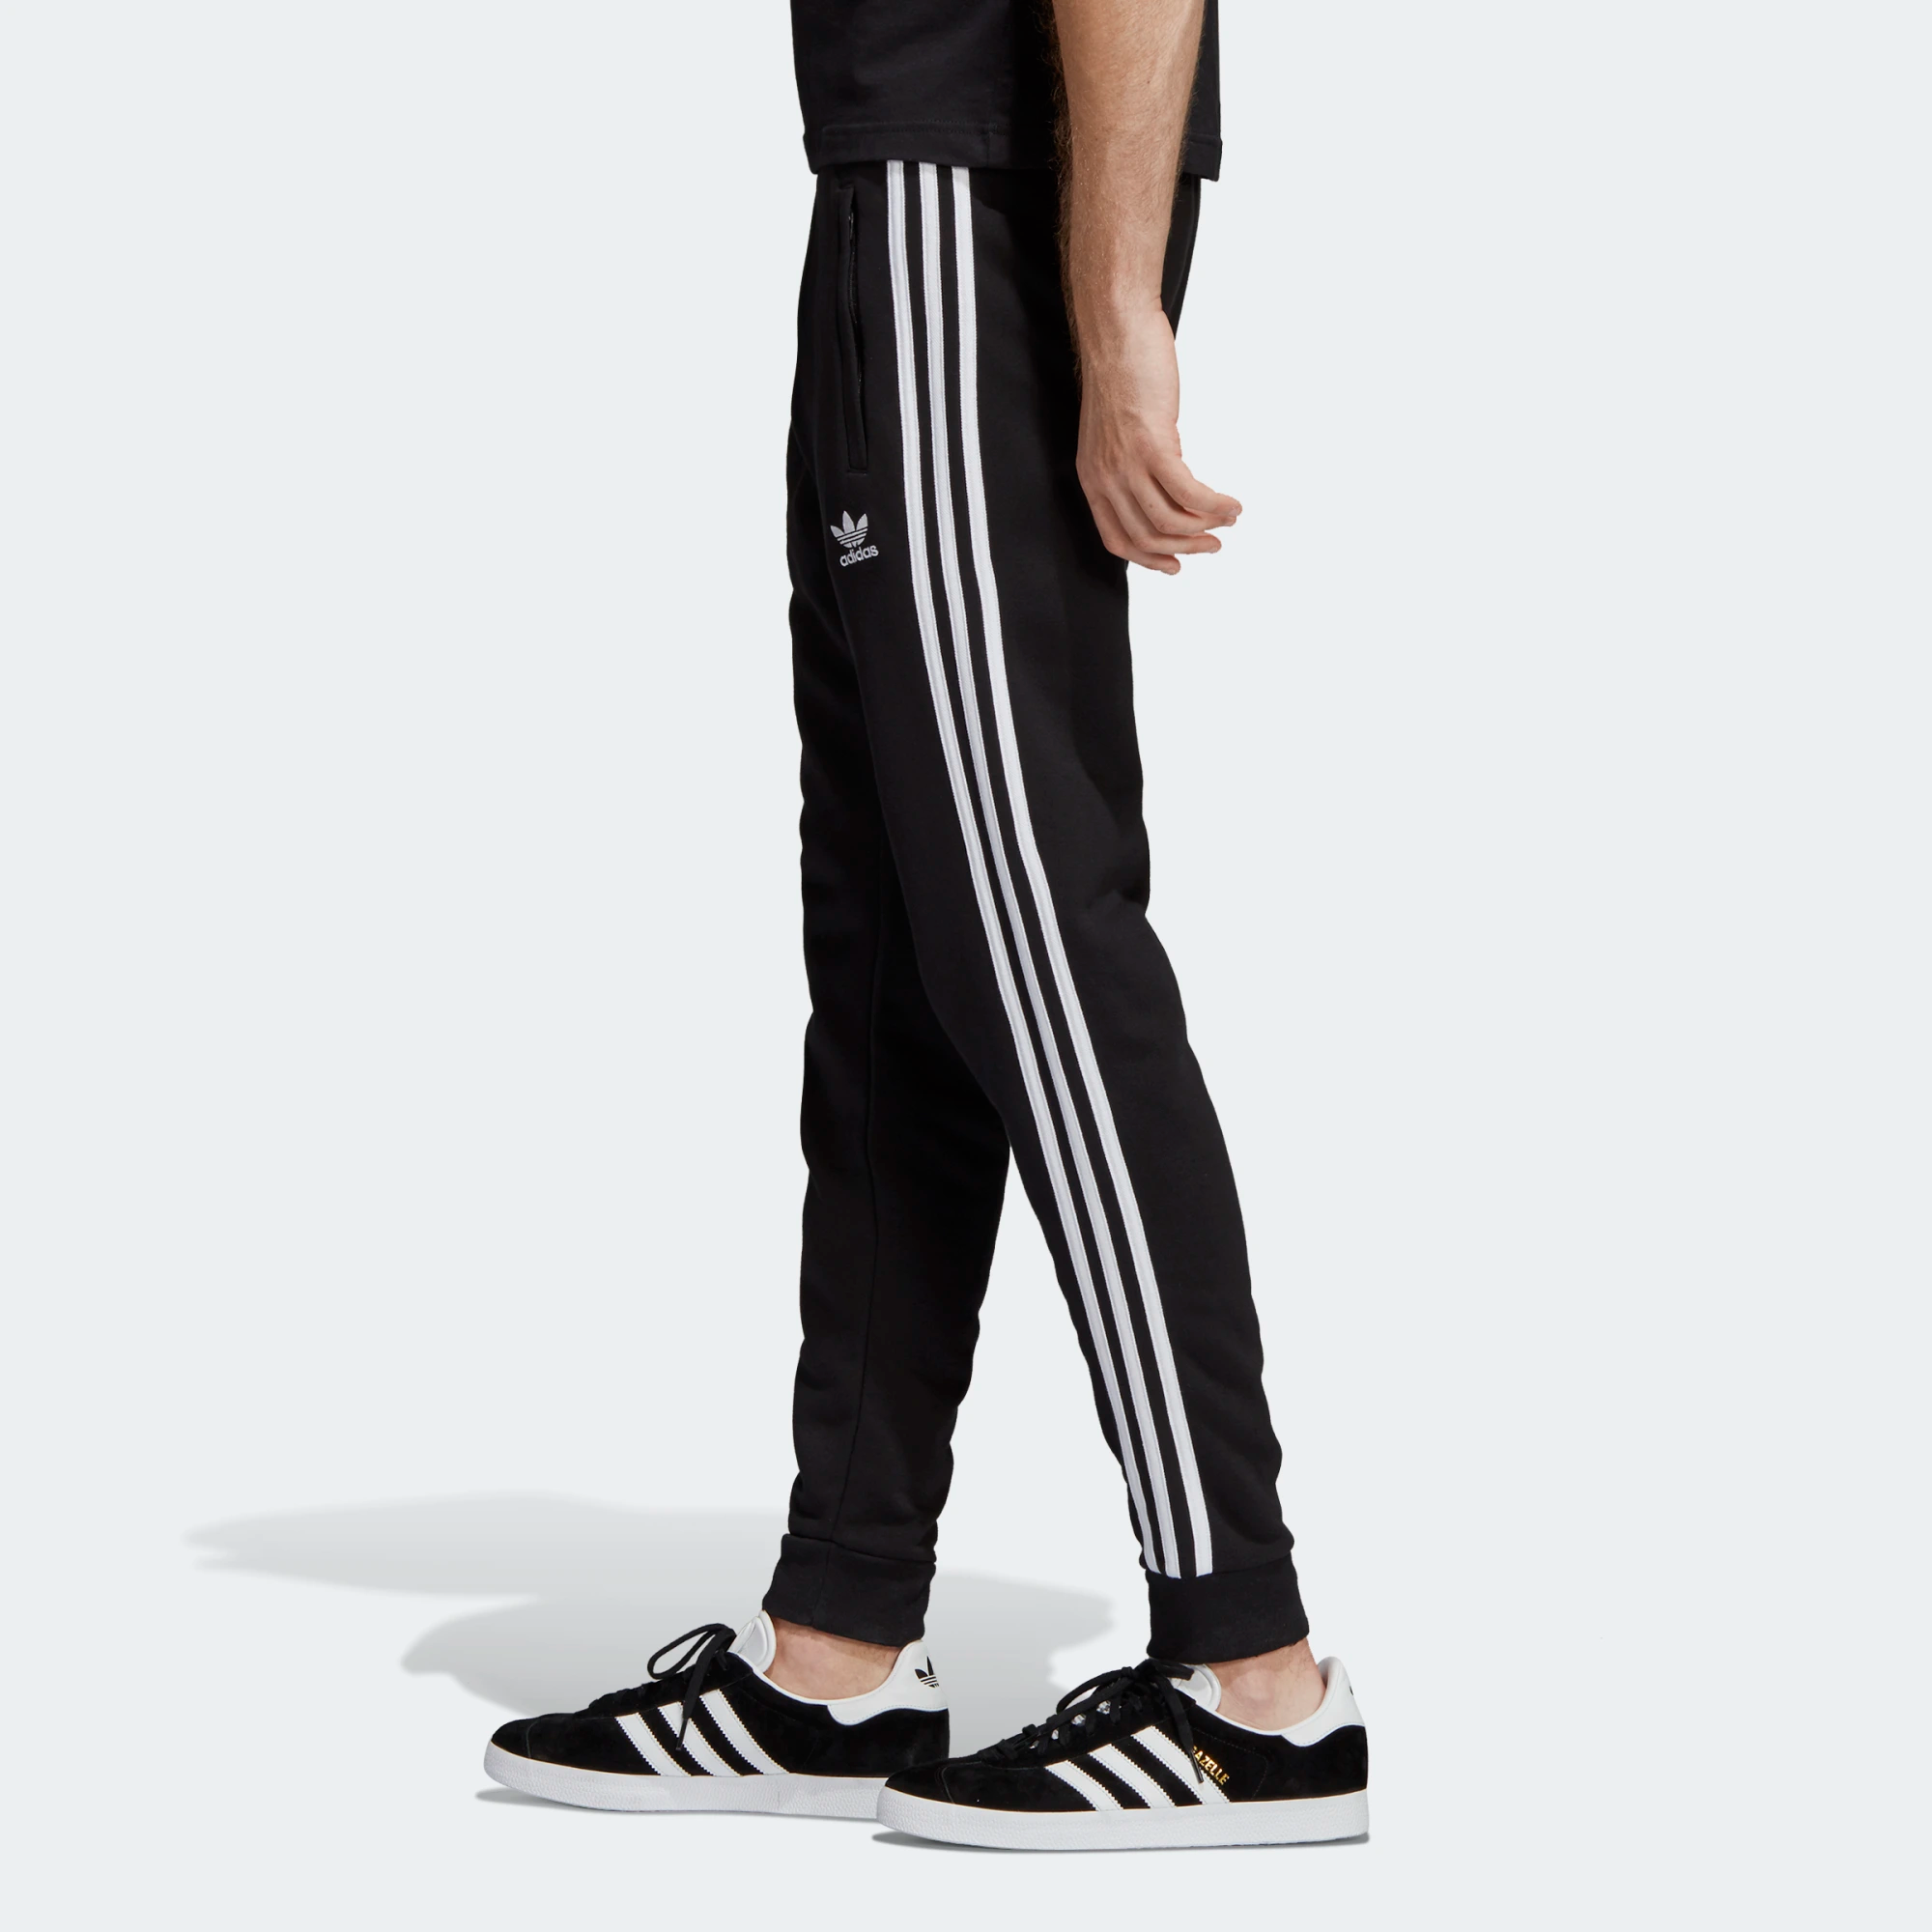 Adidas + Originals 3 stripe pants